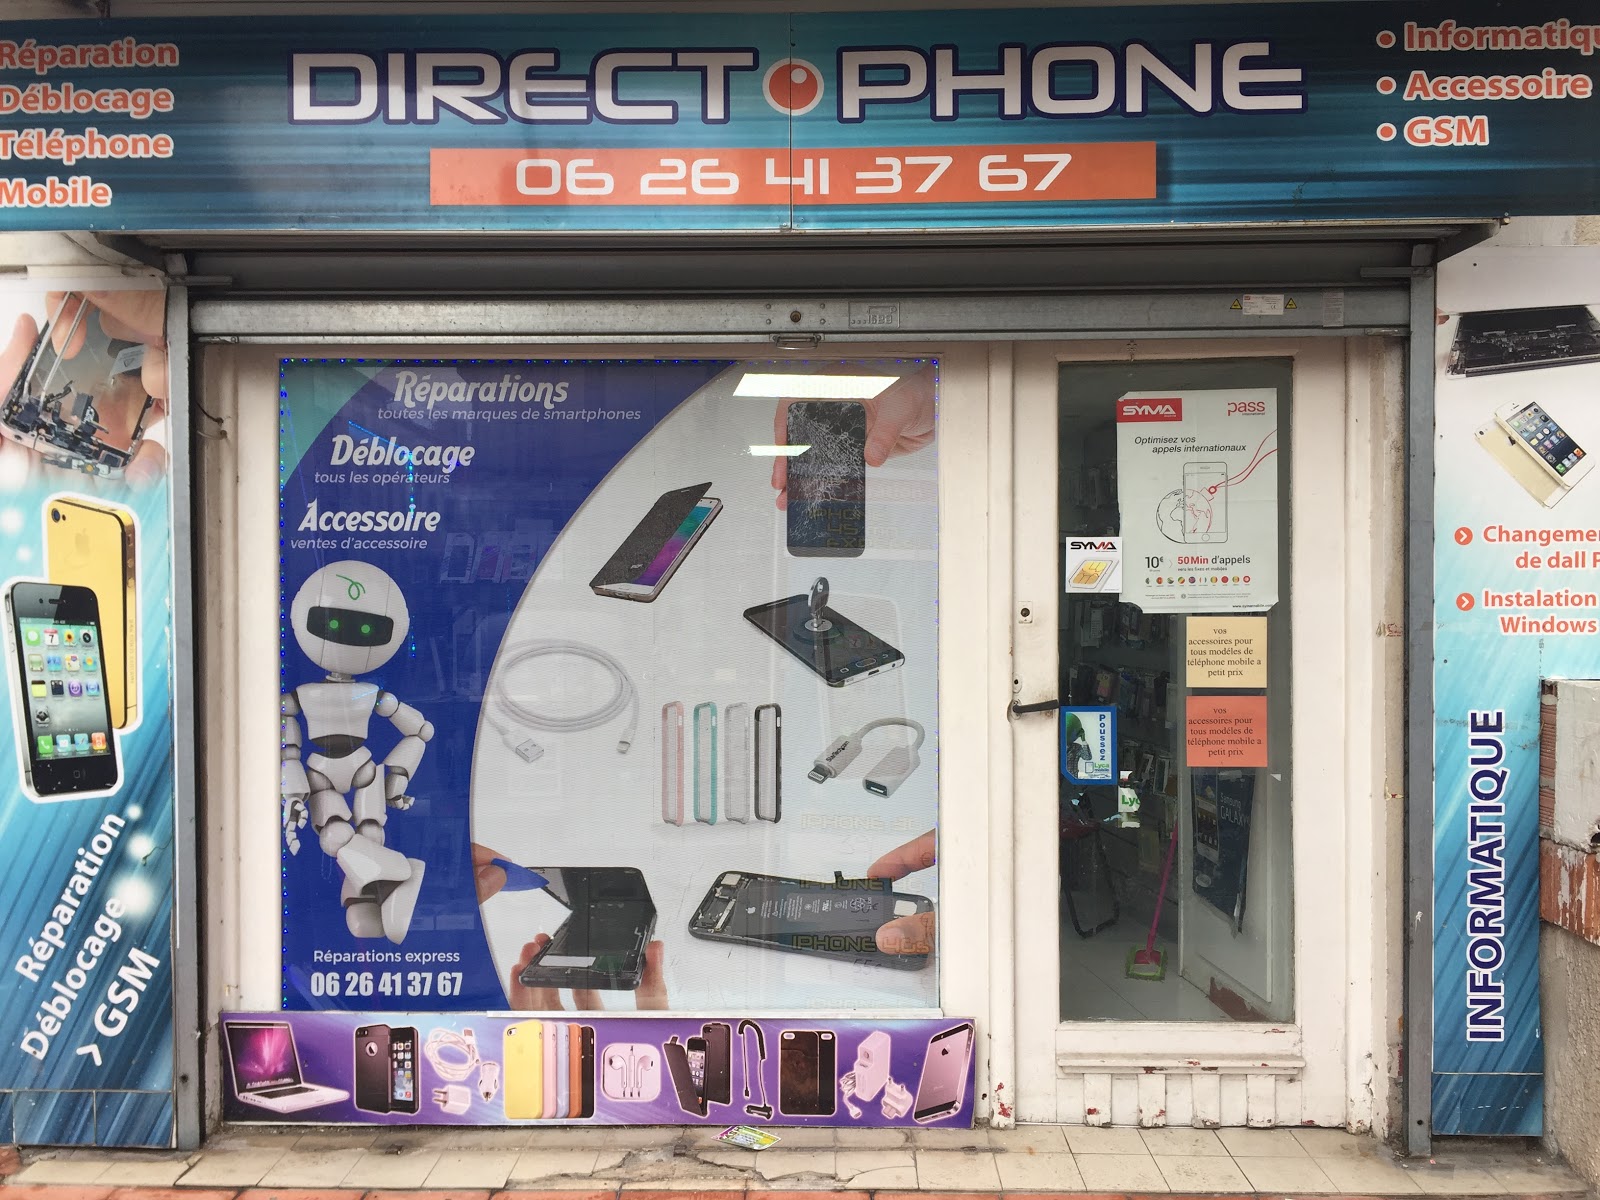 photo de la boutique de Direct-phone.reparation telephone mobile